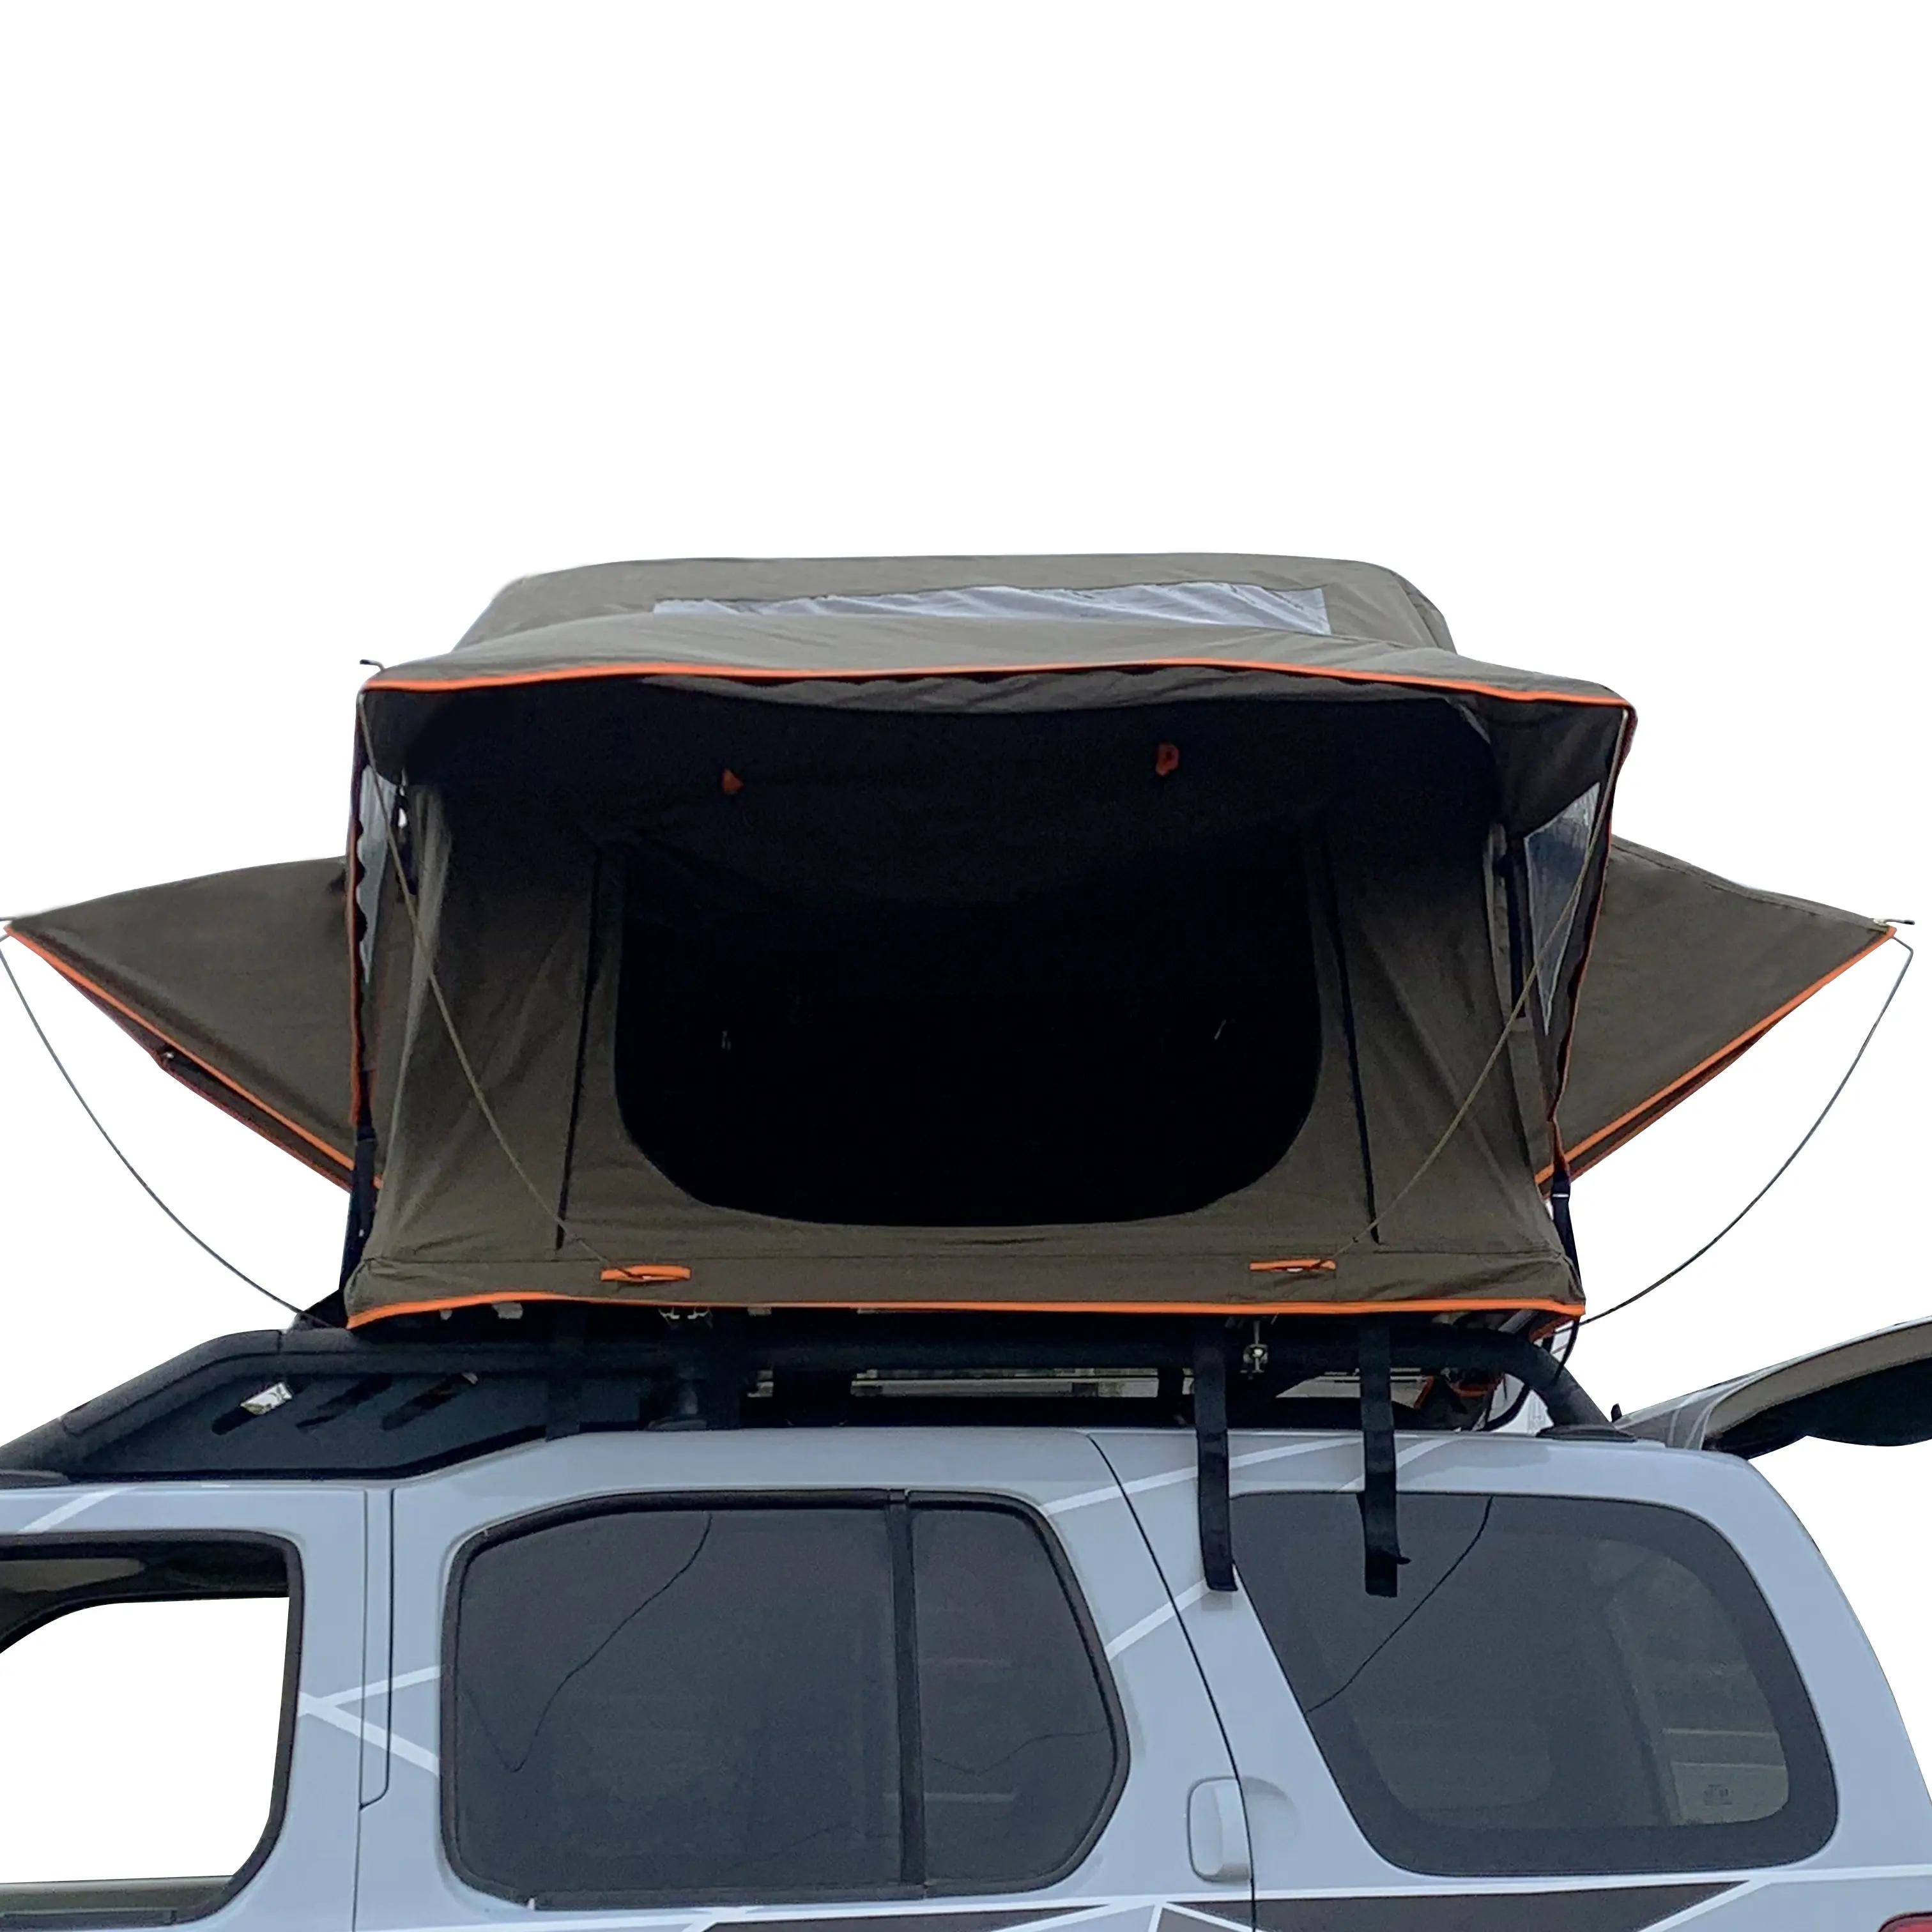 سيارات متعددة الاستخدامات في الهواء الطلق سيارات صغيرة خيام مقطورة محمولة لسقف السيارة خيمة للتخييم على سقف السيارة